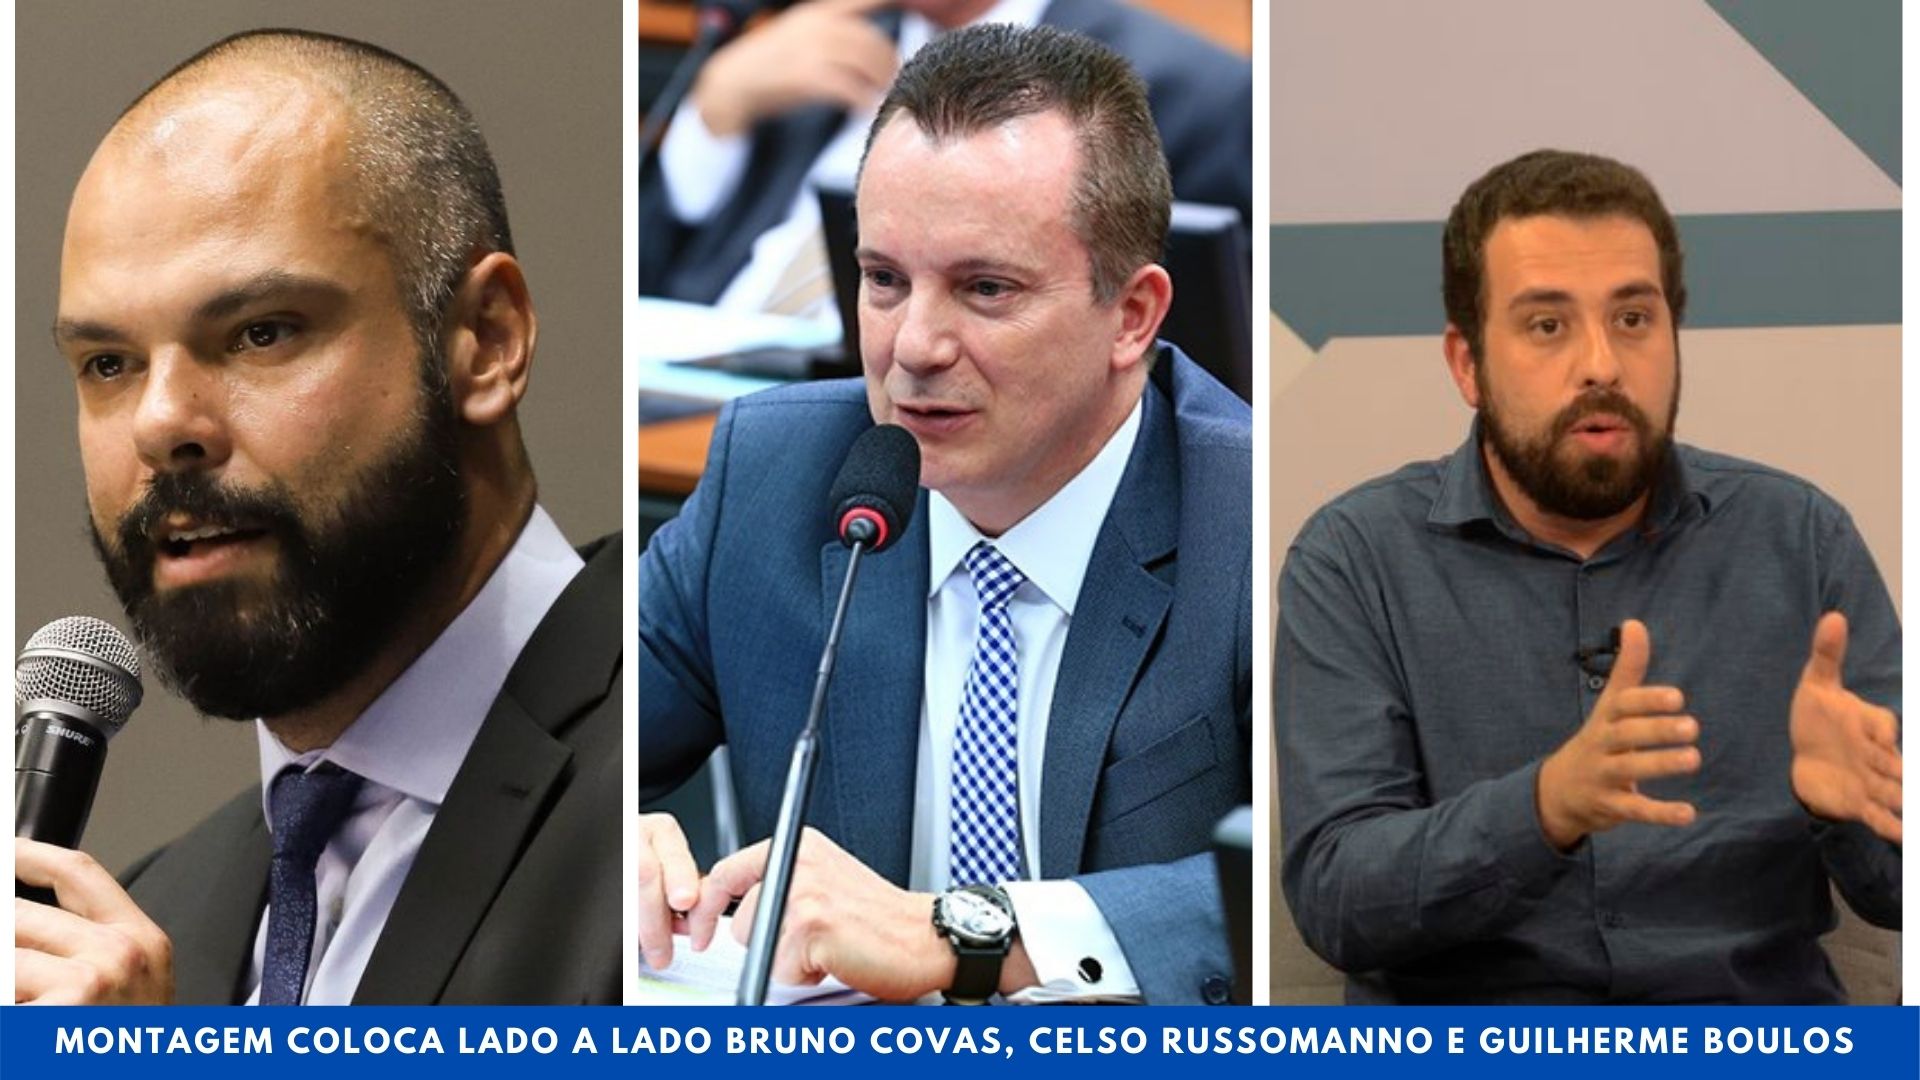 Montagem coloca lado a lado Bruno Covas, Celso Russomanno e Guilherme Boulos